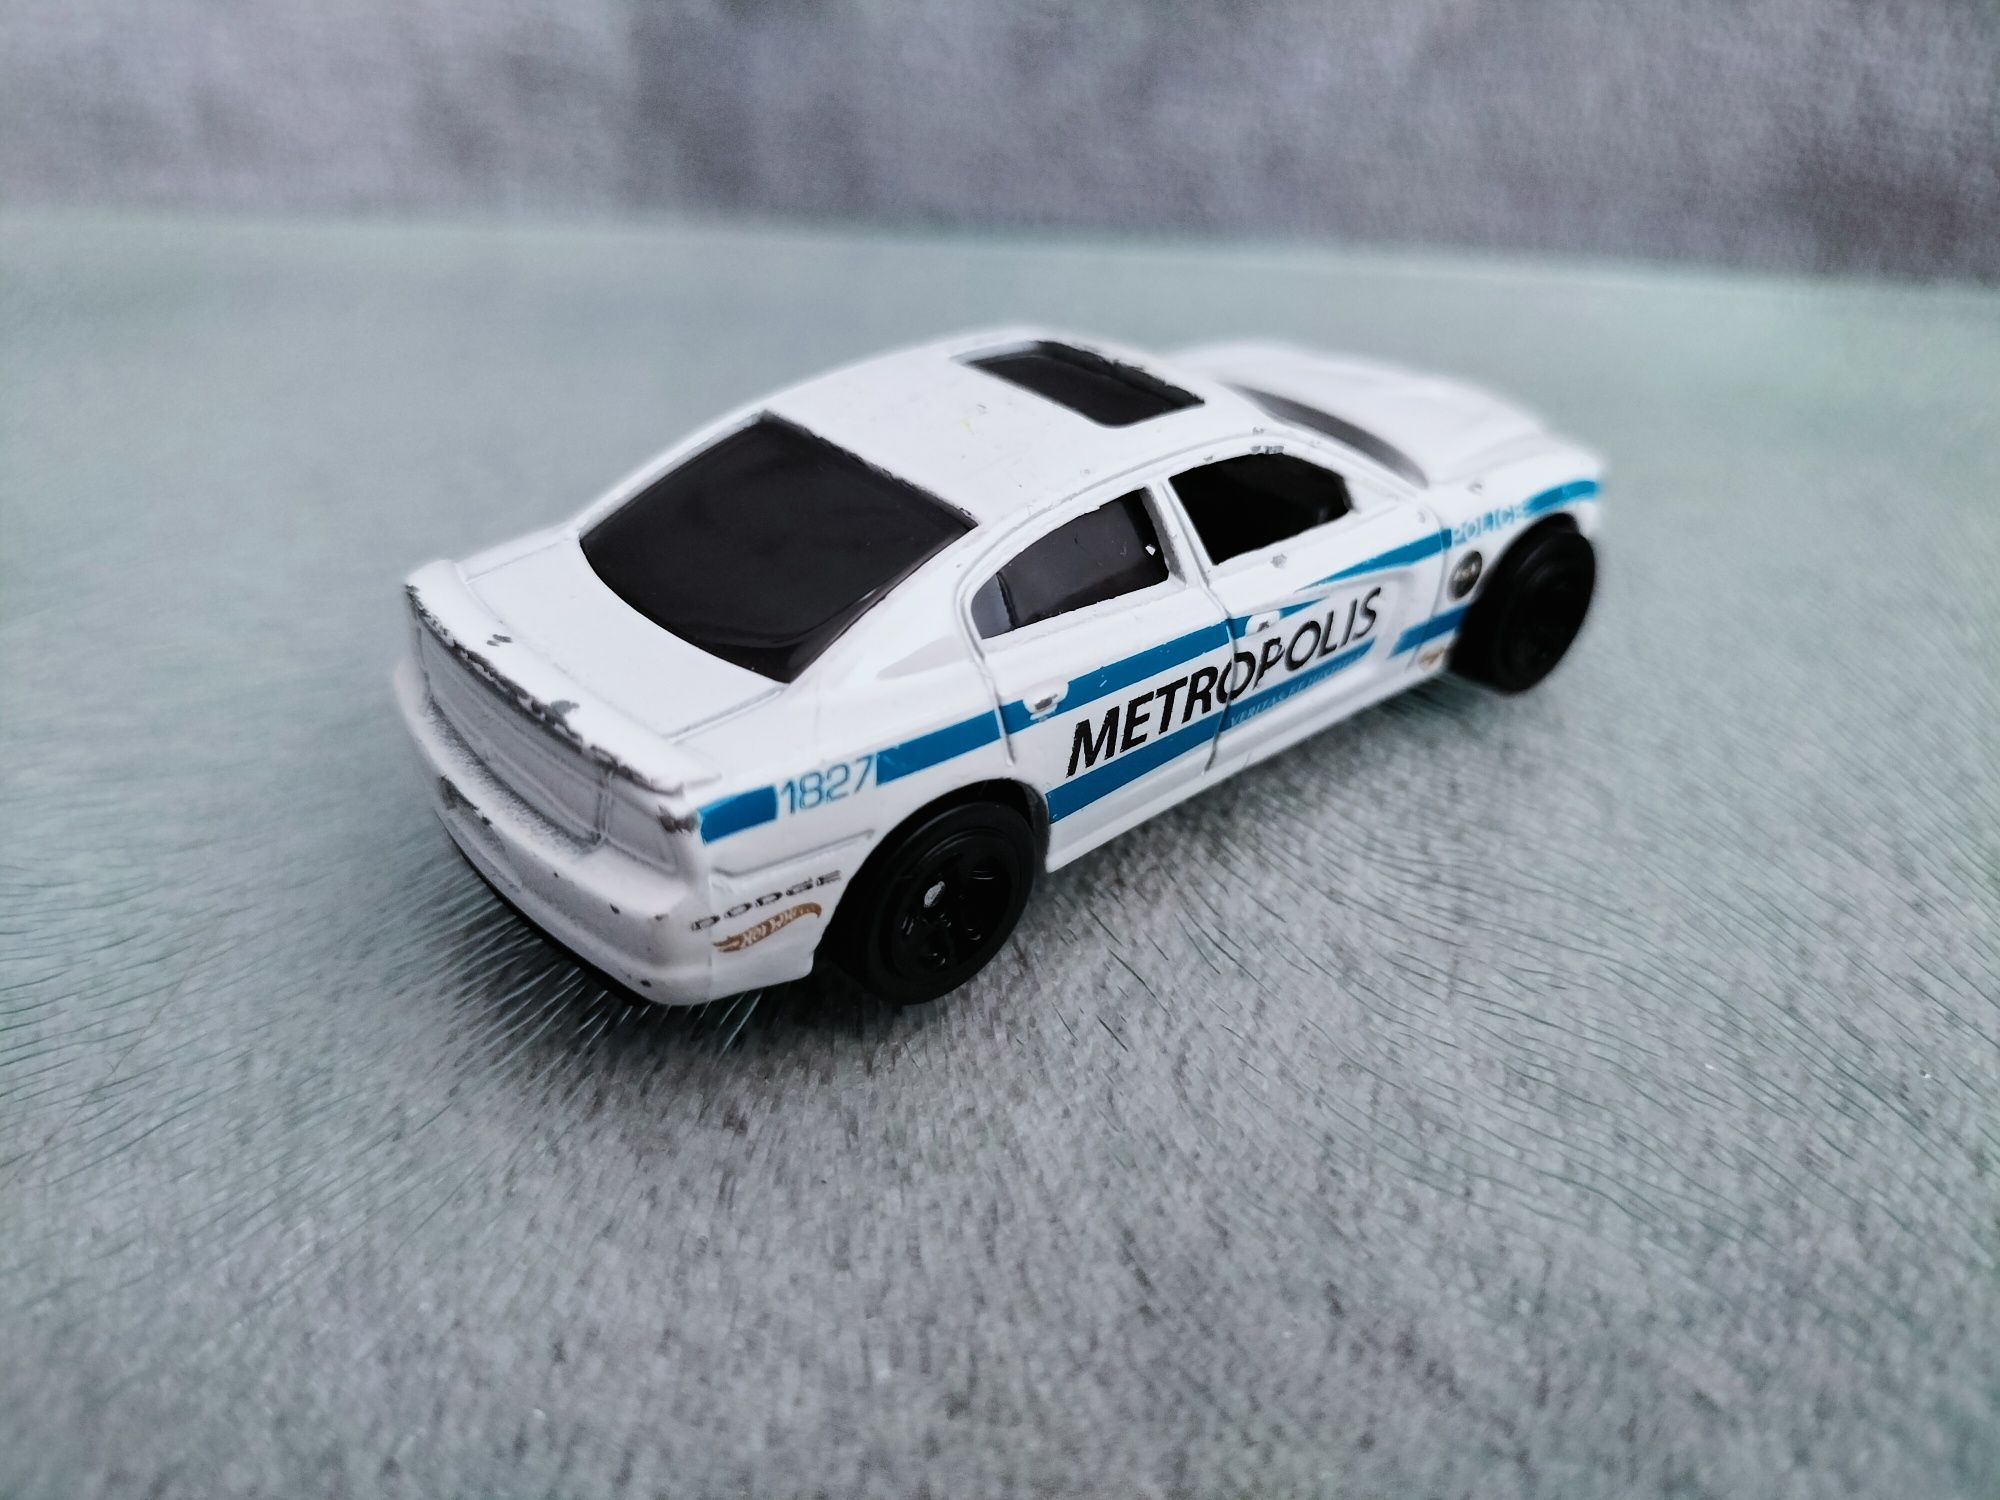 Mattel 2011 Dodge Charger R/T biały Metropolis Police Car Police HW ́1